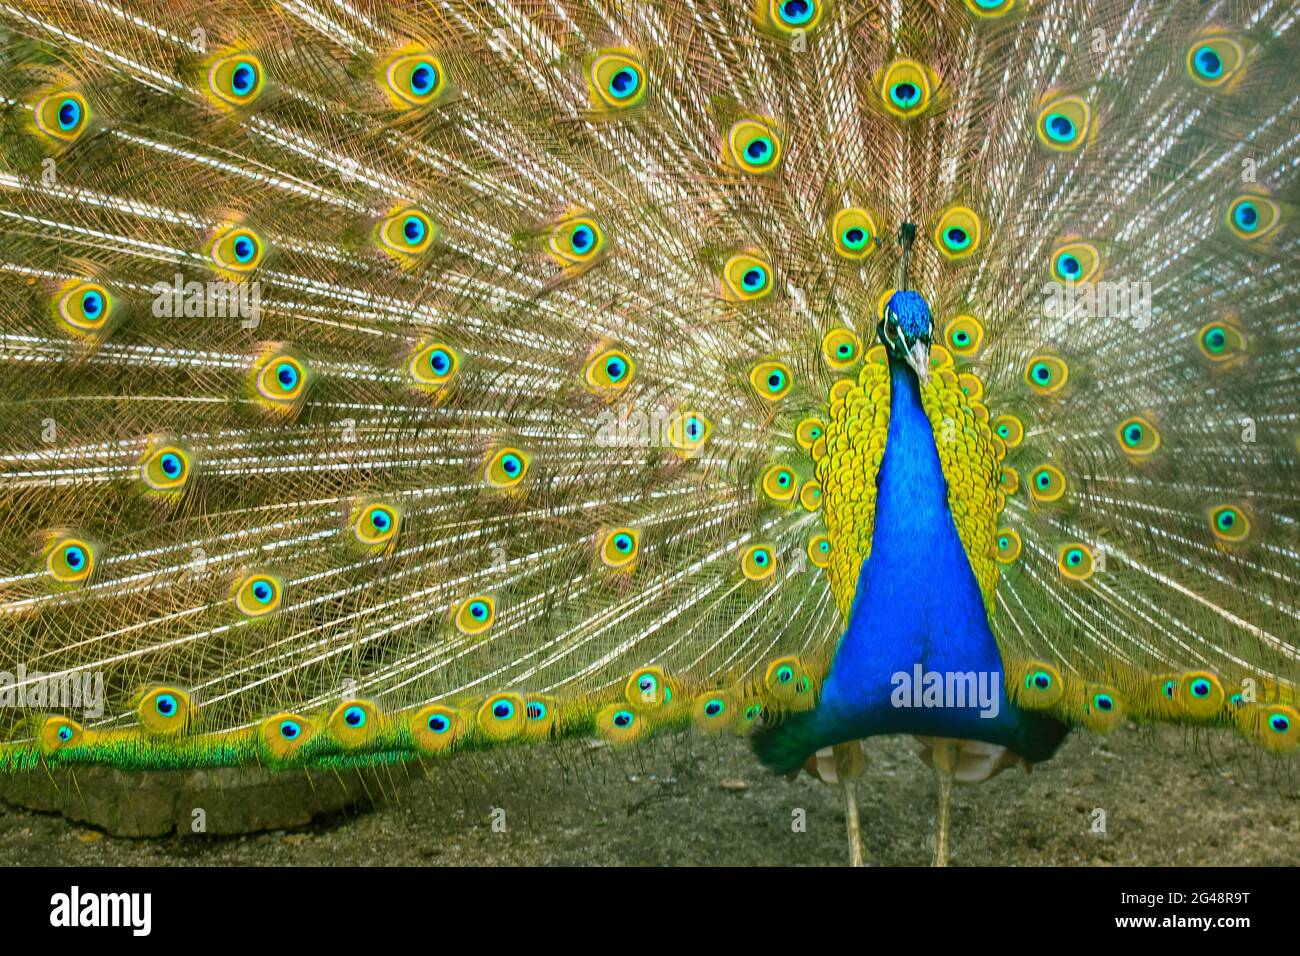 Indischer Pfau mit bunten Federn fächerspreizen seinen großen Schwanz.  Indischer Vogel Stockfotografie - Alamy